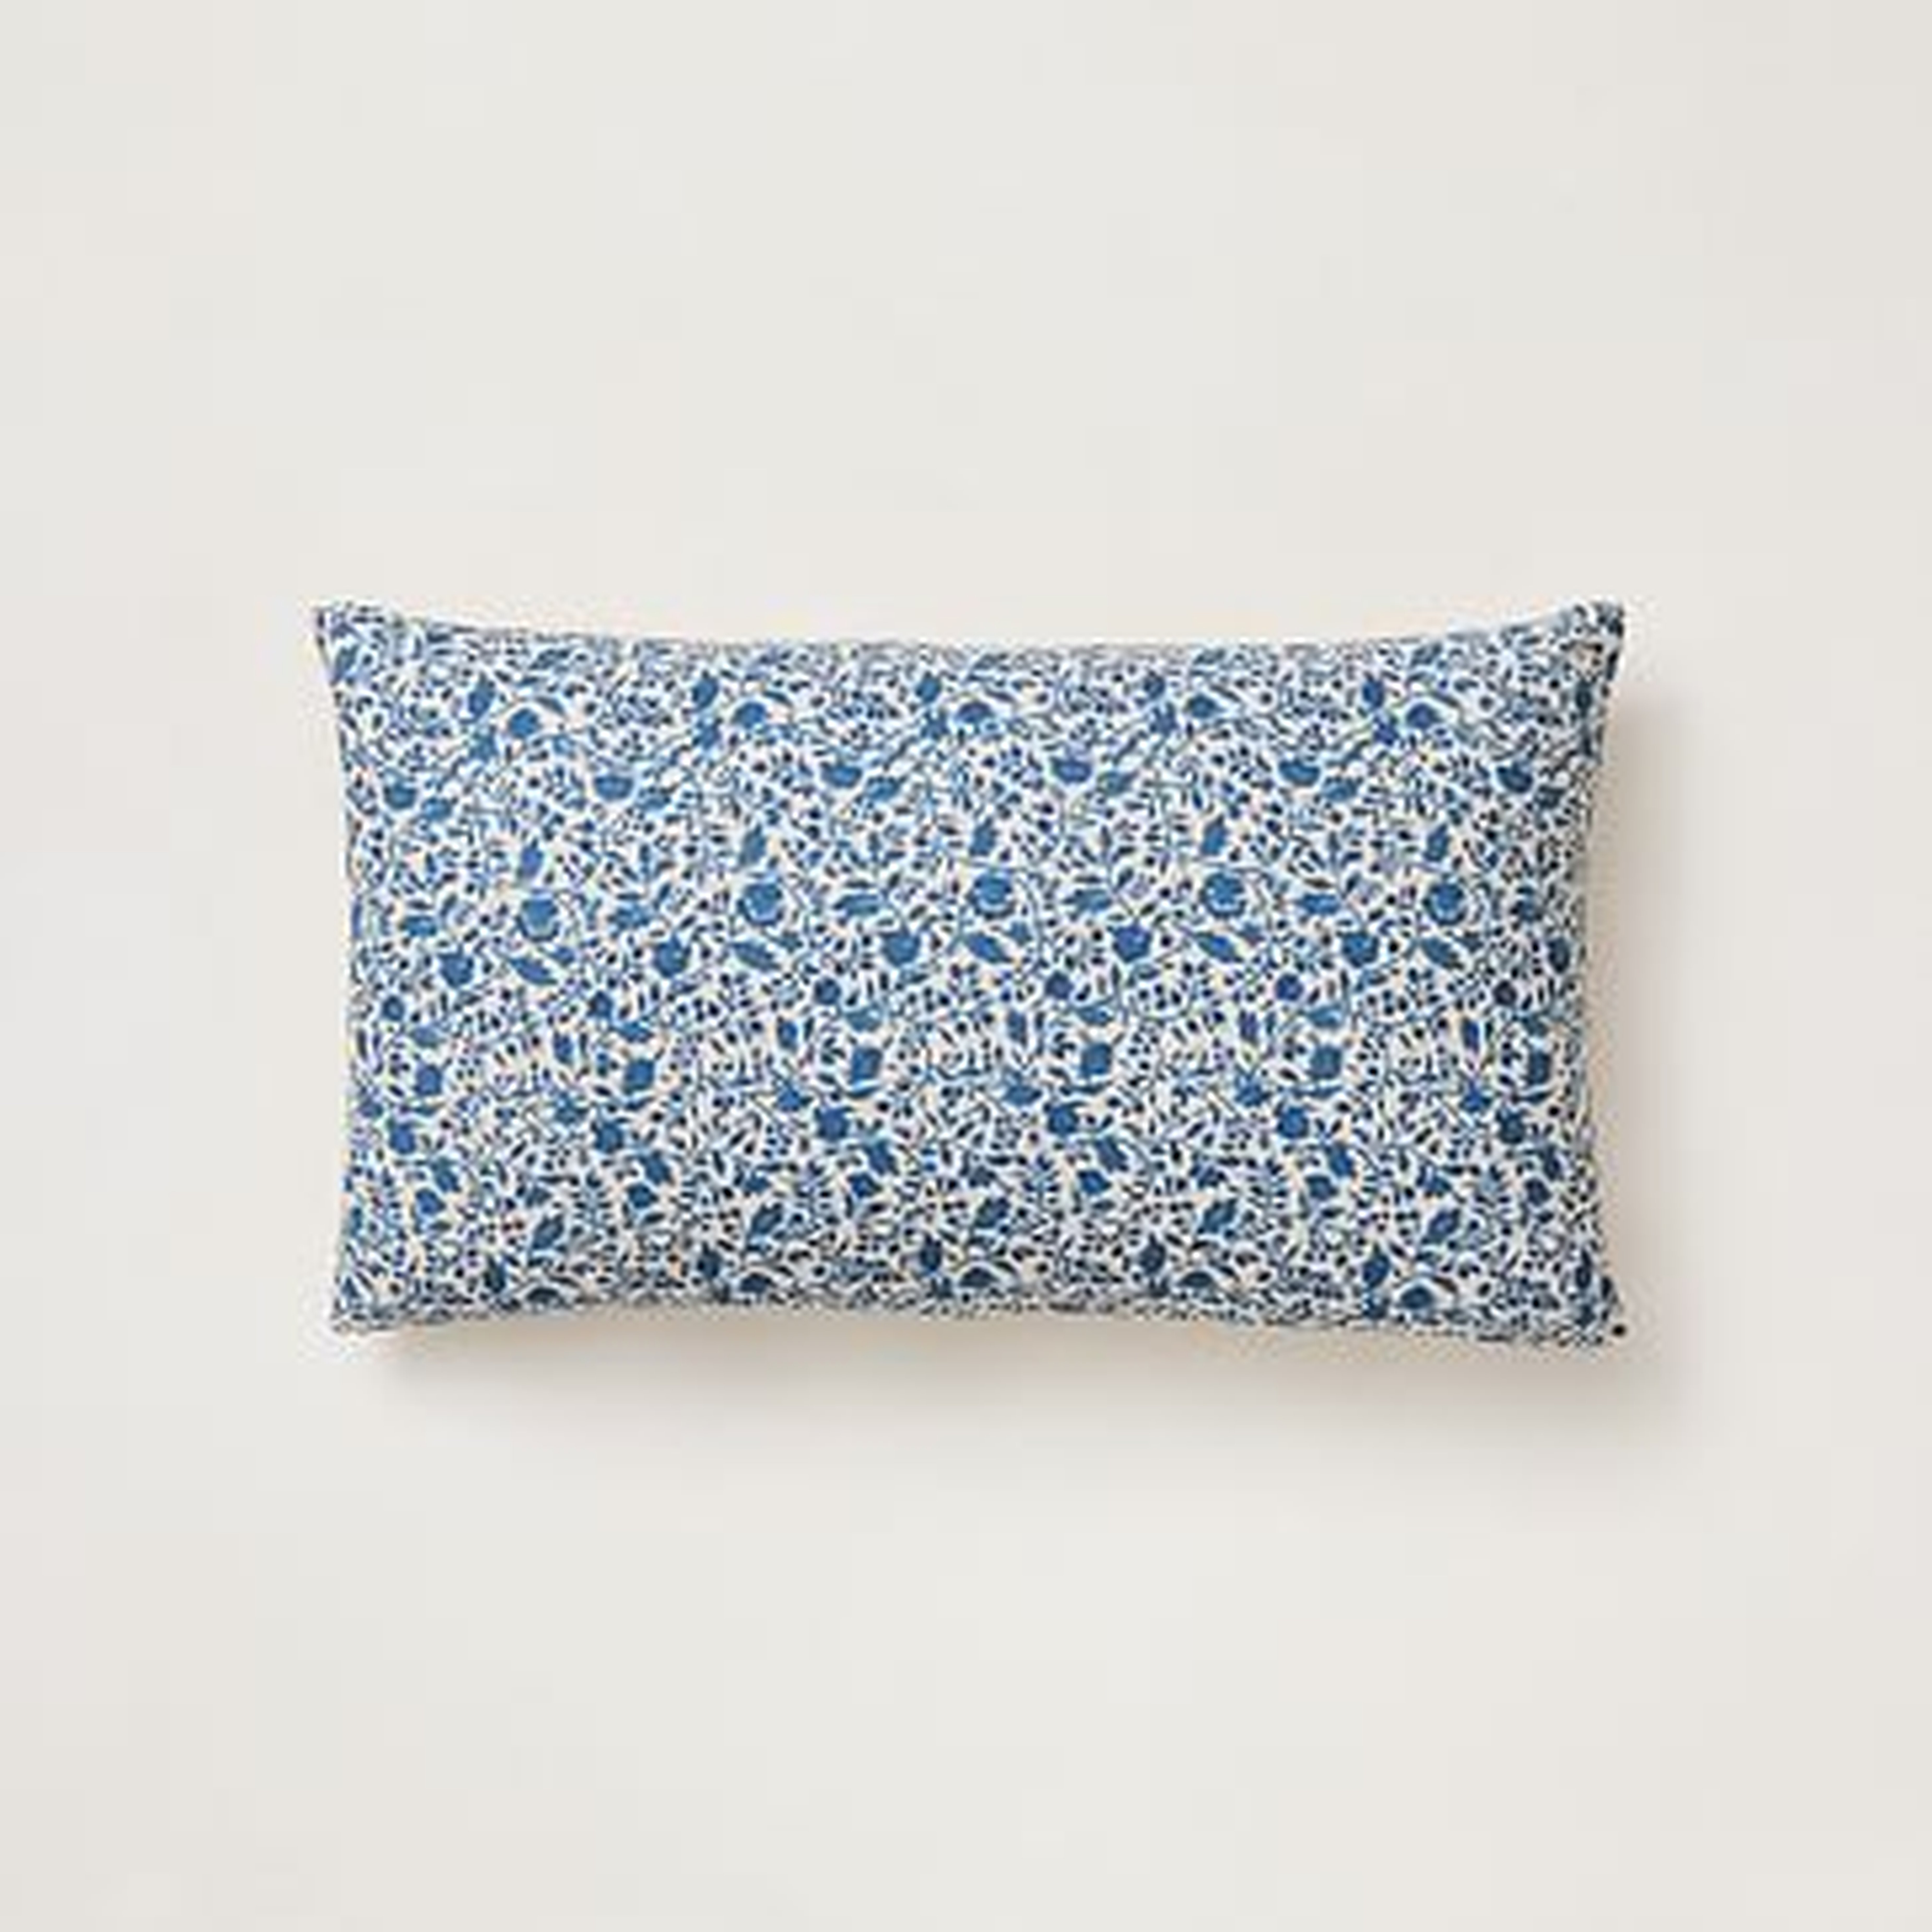 Cotton Velvet Petit Jardin Pillow Cover, Indigo, 12"x21" - West Elm